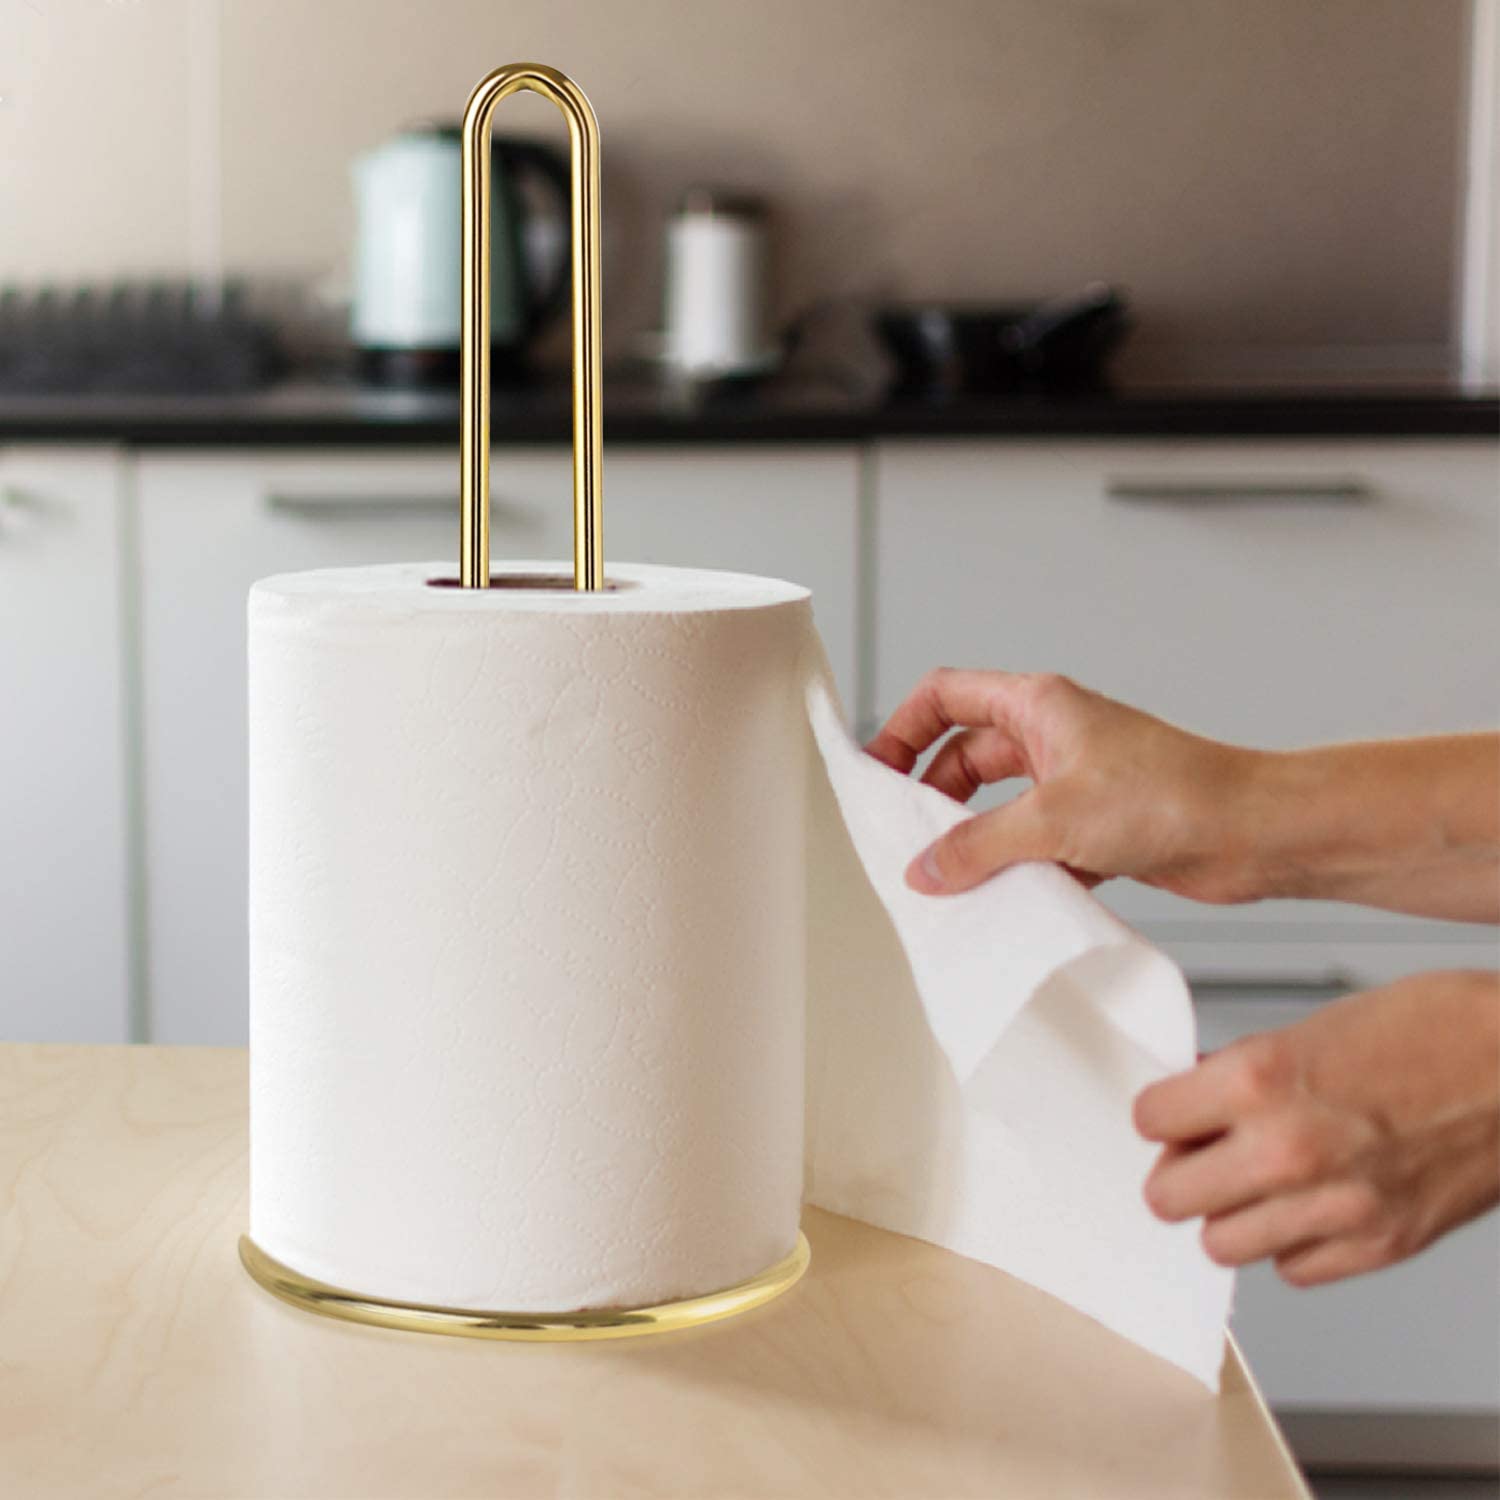 Metal paper towel holder on kitchen tabletop